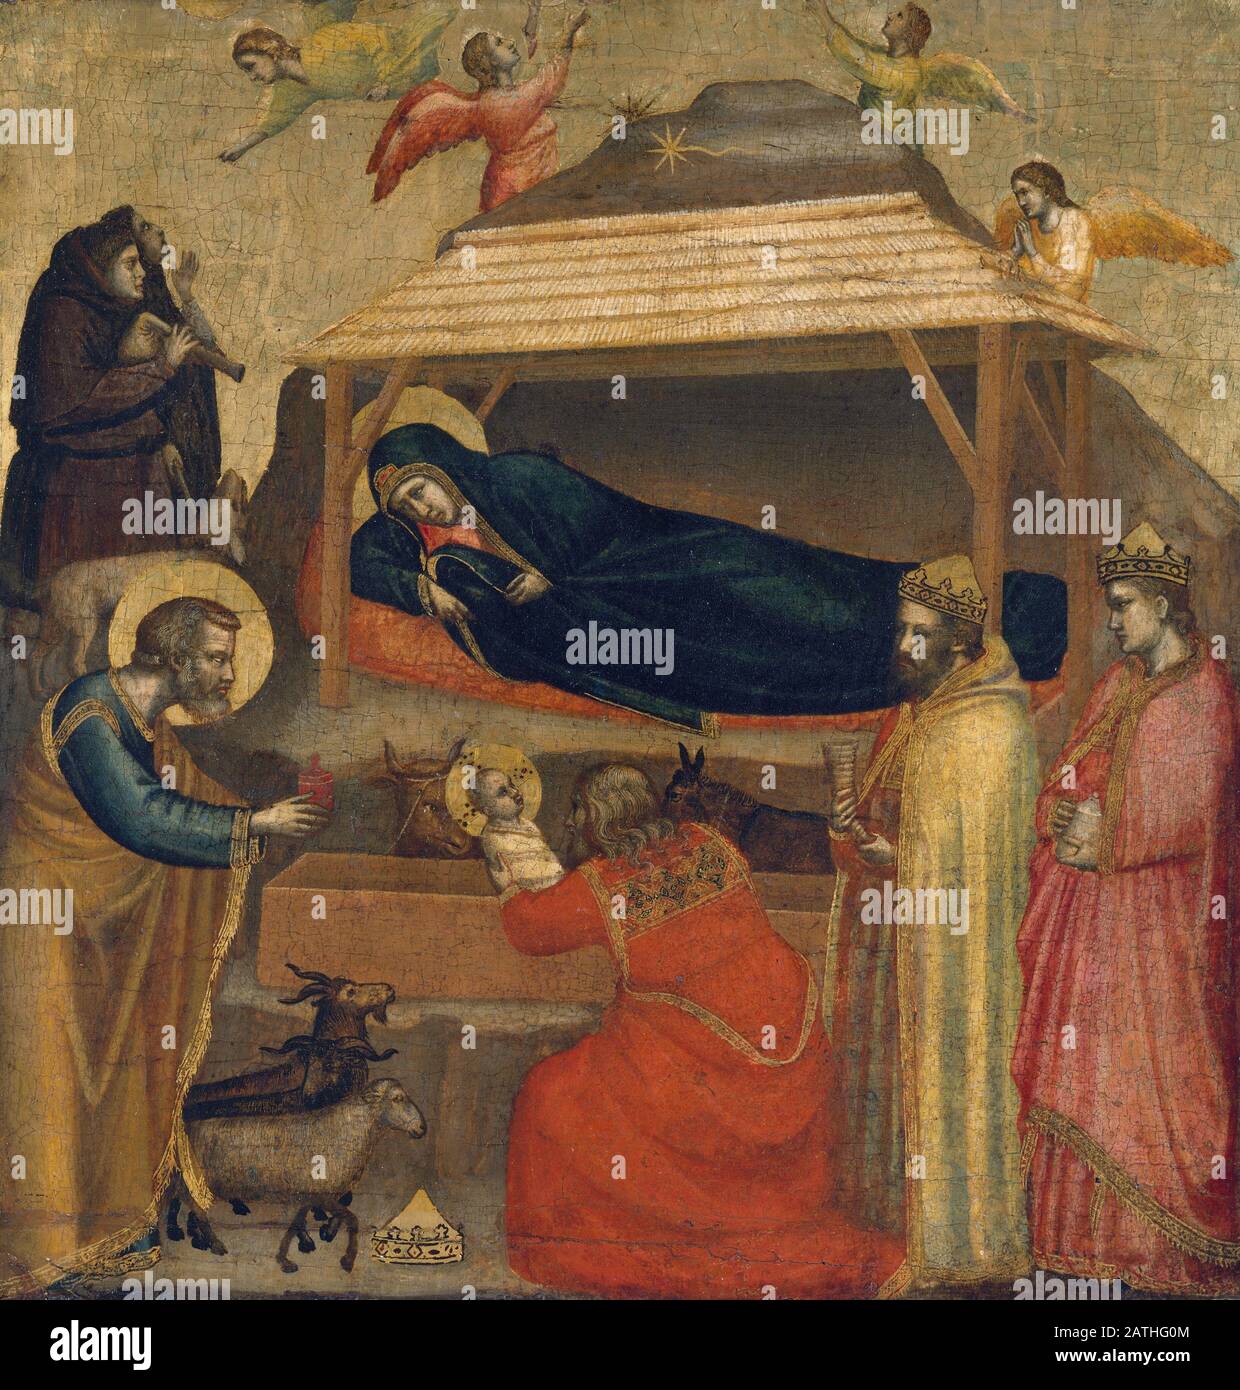 Giotto di Bondone escuela italiana la Adoración De los Magos posiblemente c.1320 Tempera sobre madera, oro (45.1 x 43.8 cm) Nueva York, Museo Metropolitano de Arte Foto de stock